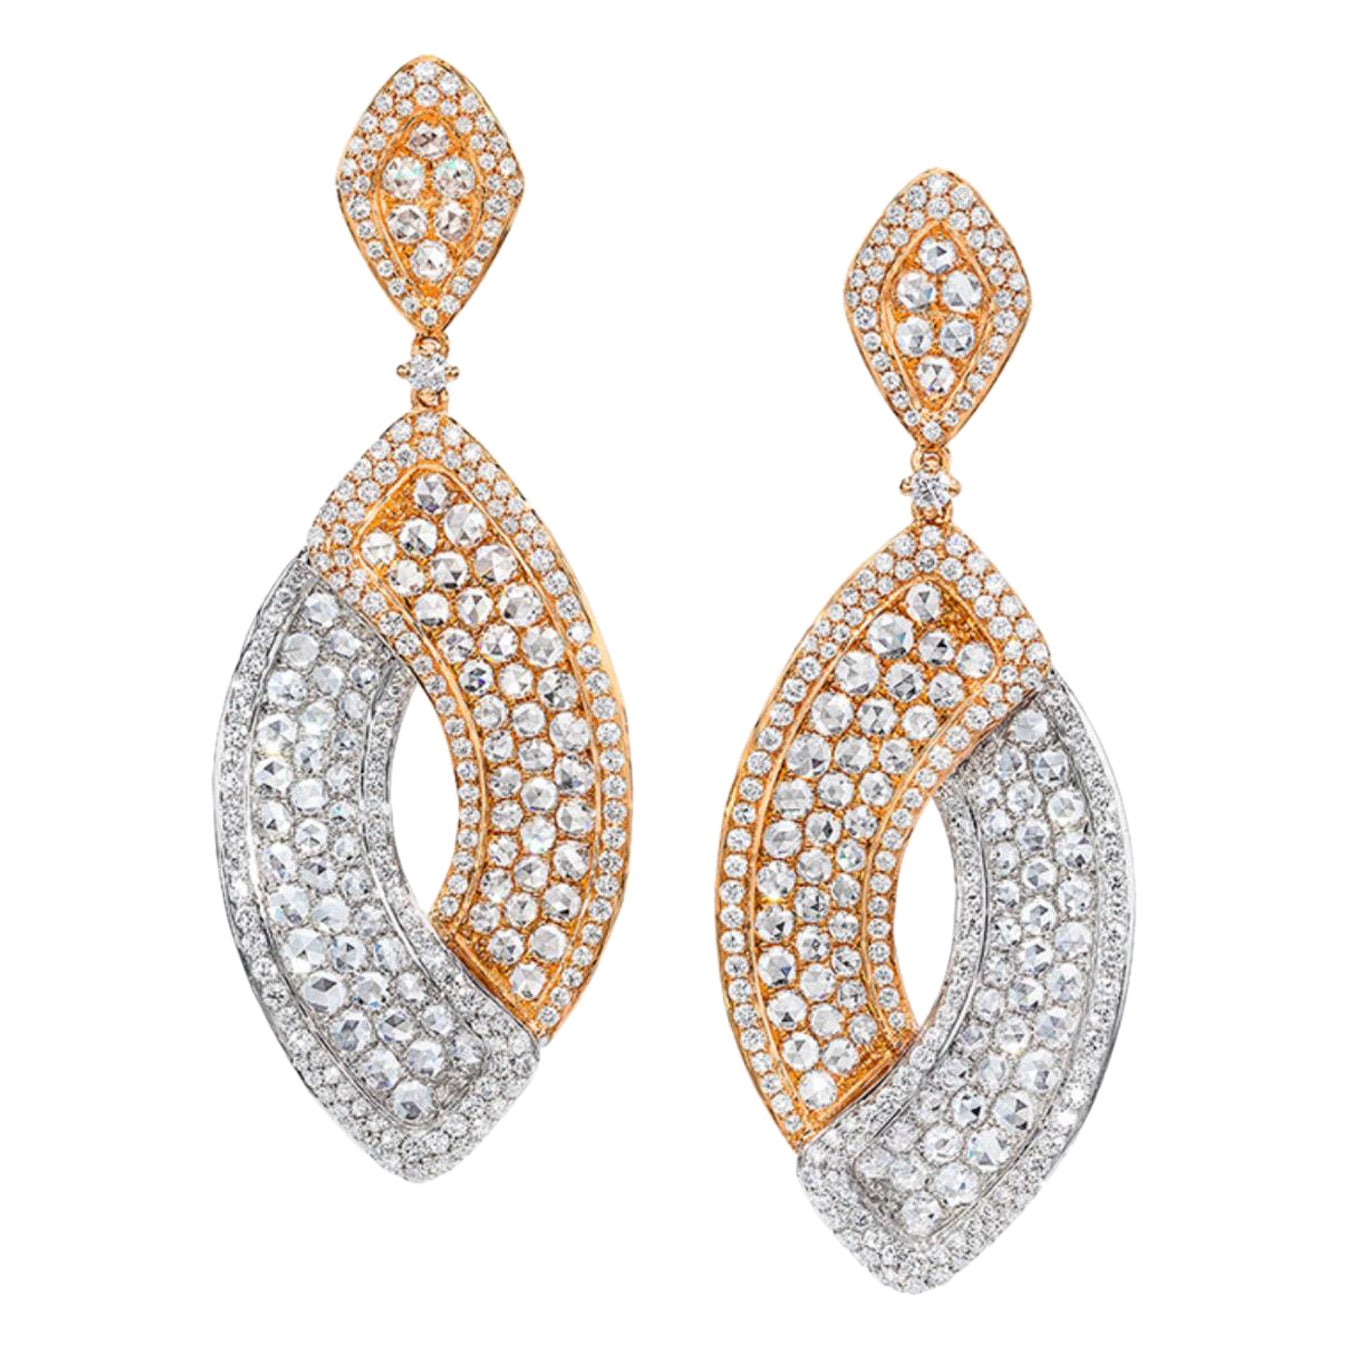 Boucles d'oreilles pendantes en or rose et blanc 18KT avec 6,24 cts de diamants brillants et taille rose